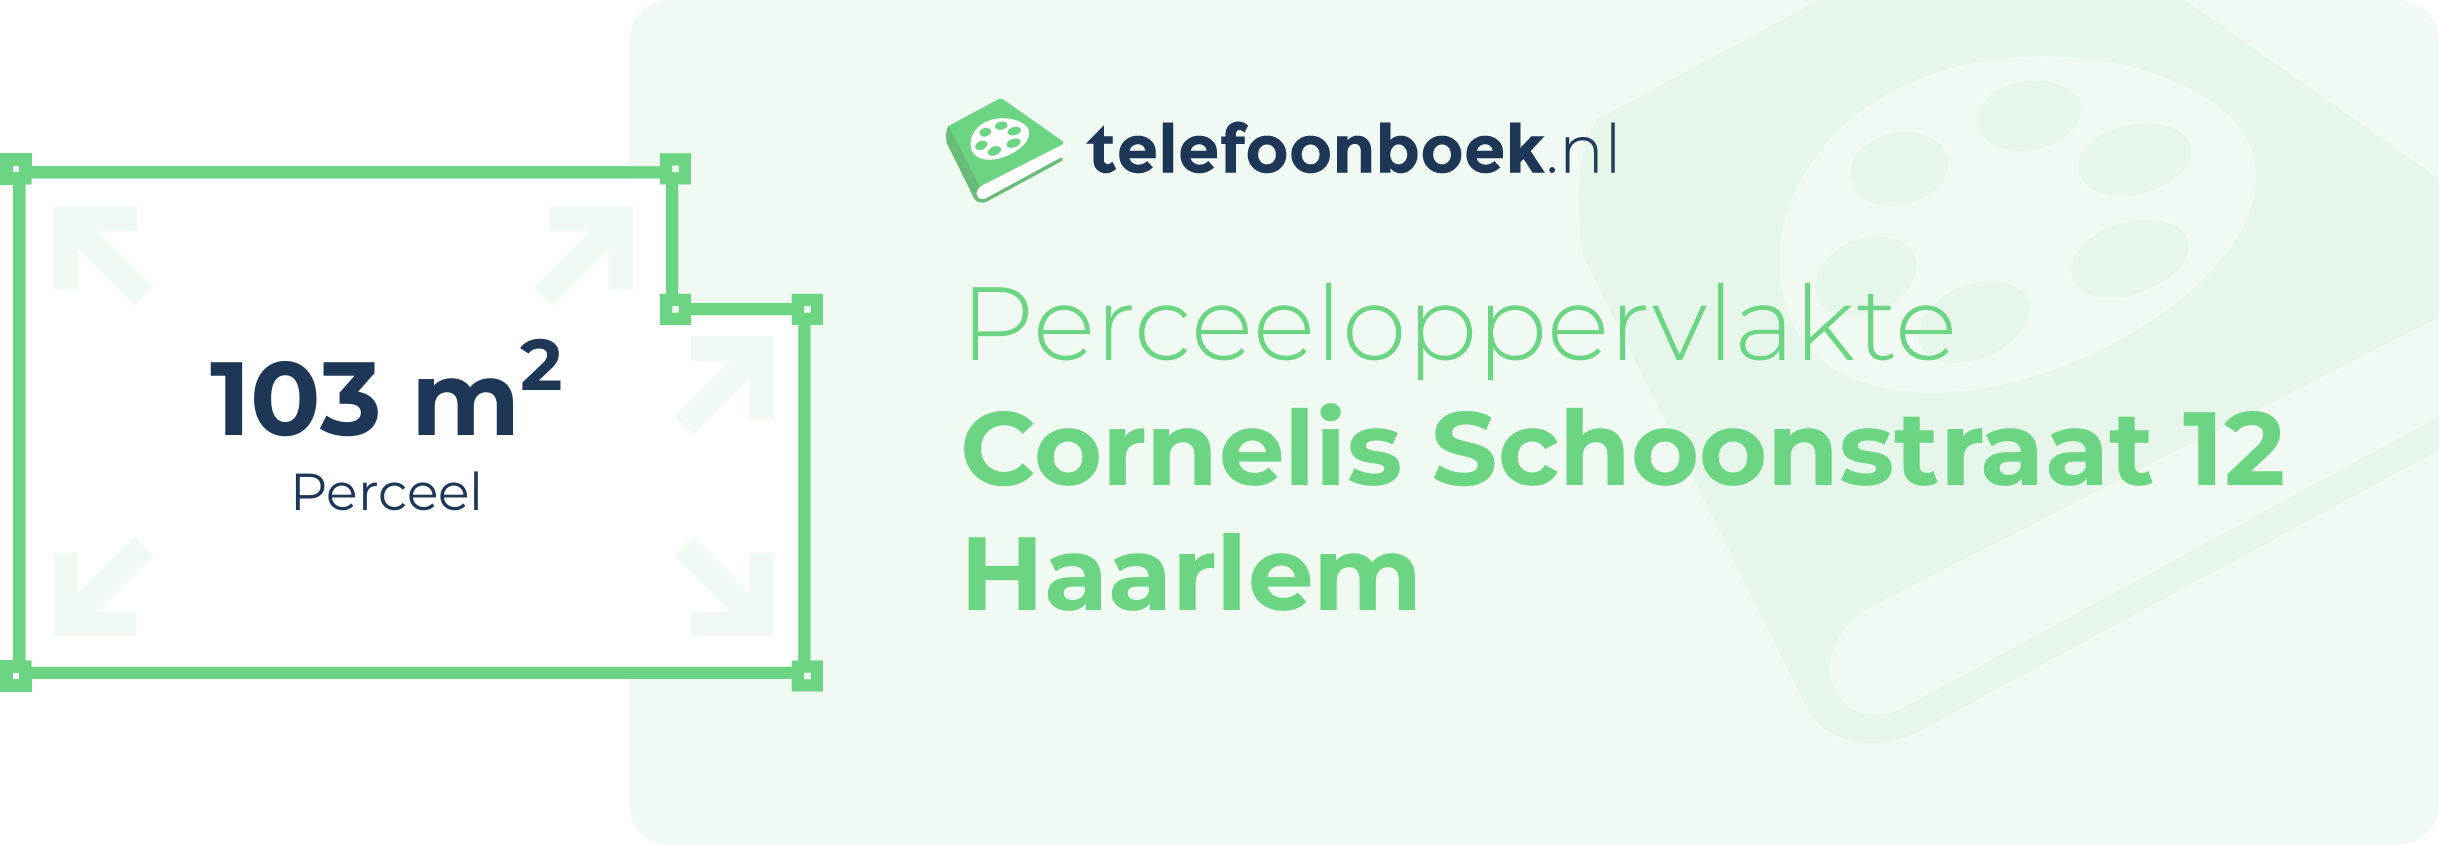 Perceeloppervlakte Cornelis Schoonstraat 12 Haarlem